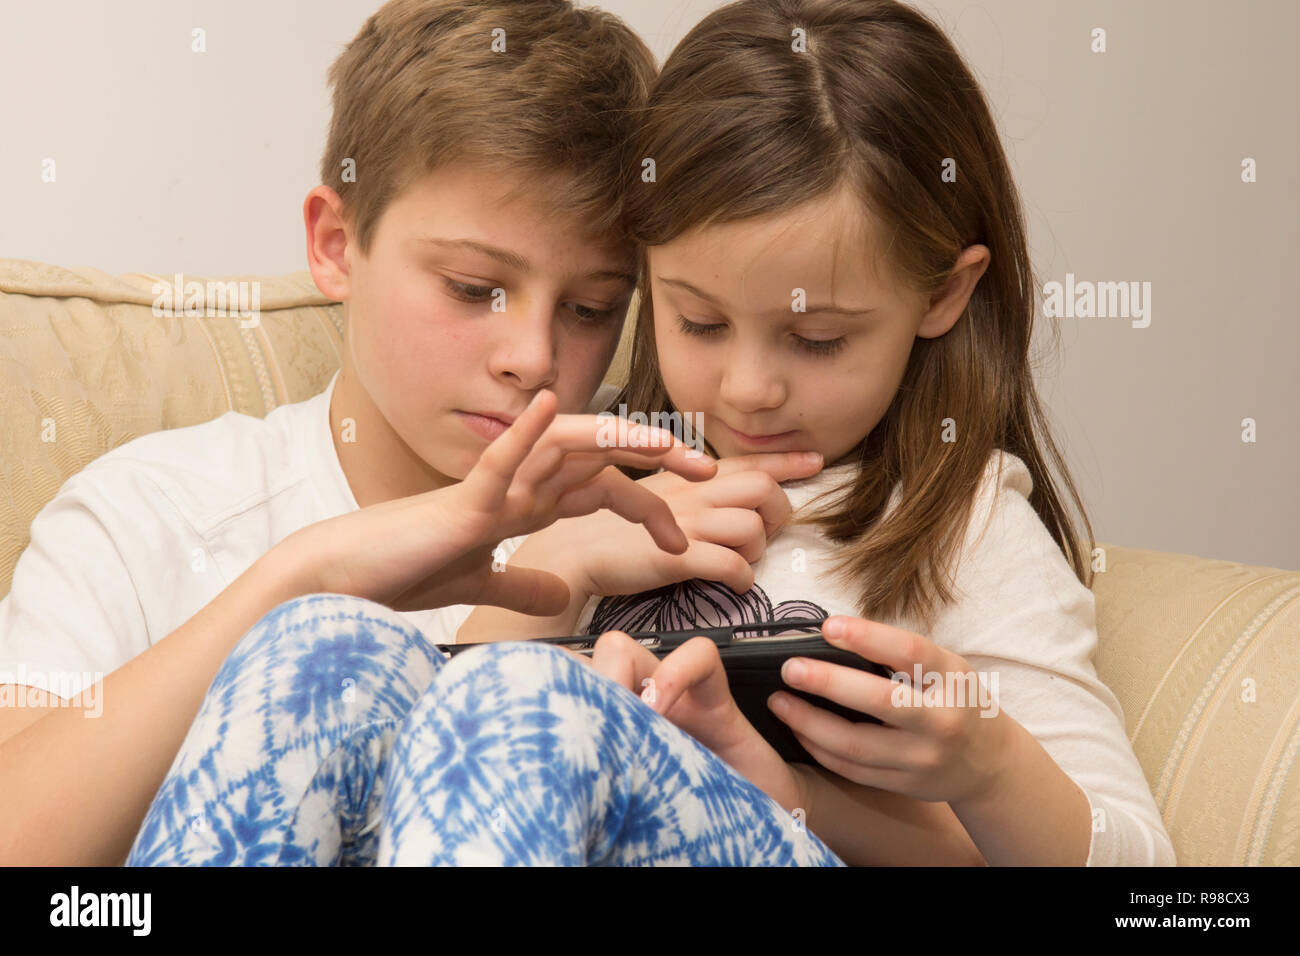 Appareil numérique, tablette, iPad, frère aîné d'aider sœur plus jeune avec les médias sociaux, la technologie moderne Banque D'Images